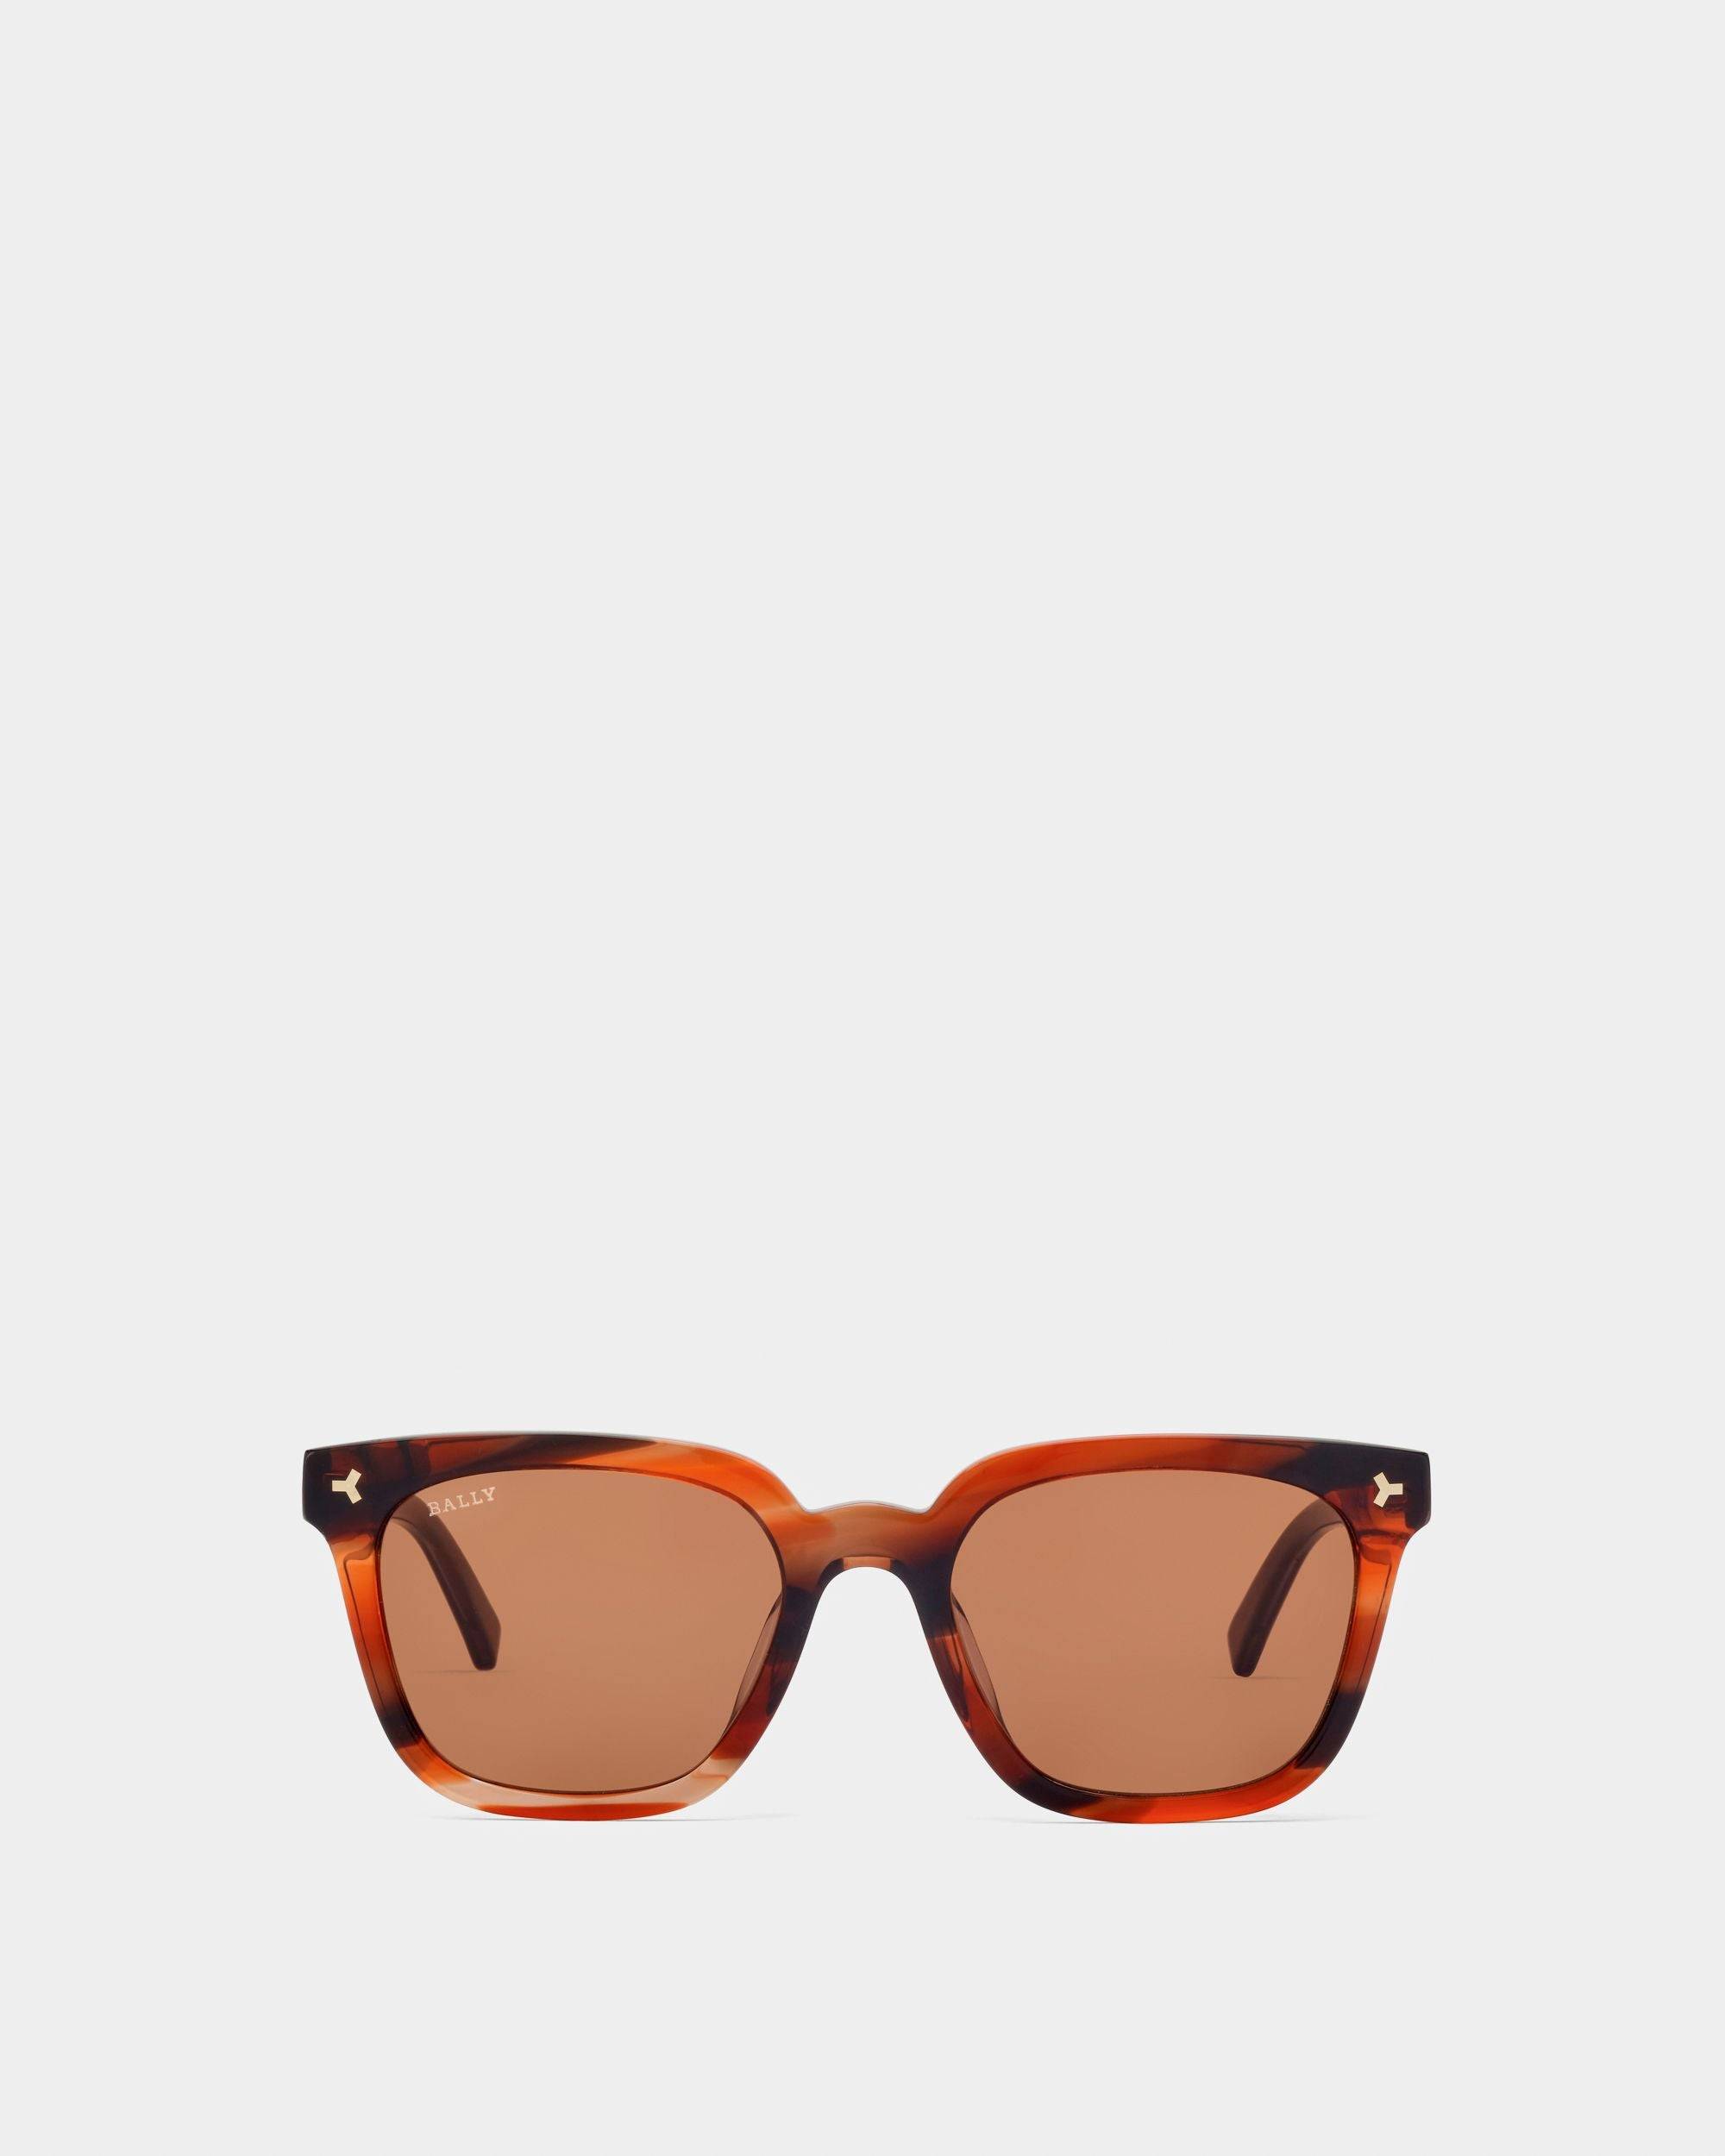 Eben Acetate Sunglasses In Brown Tortoise Shell & Brown Lenses - Men's - Bally